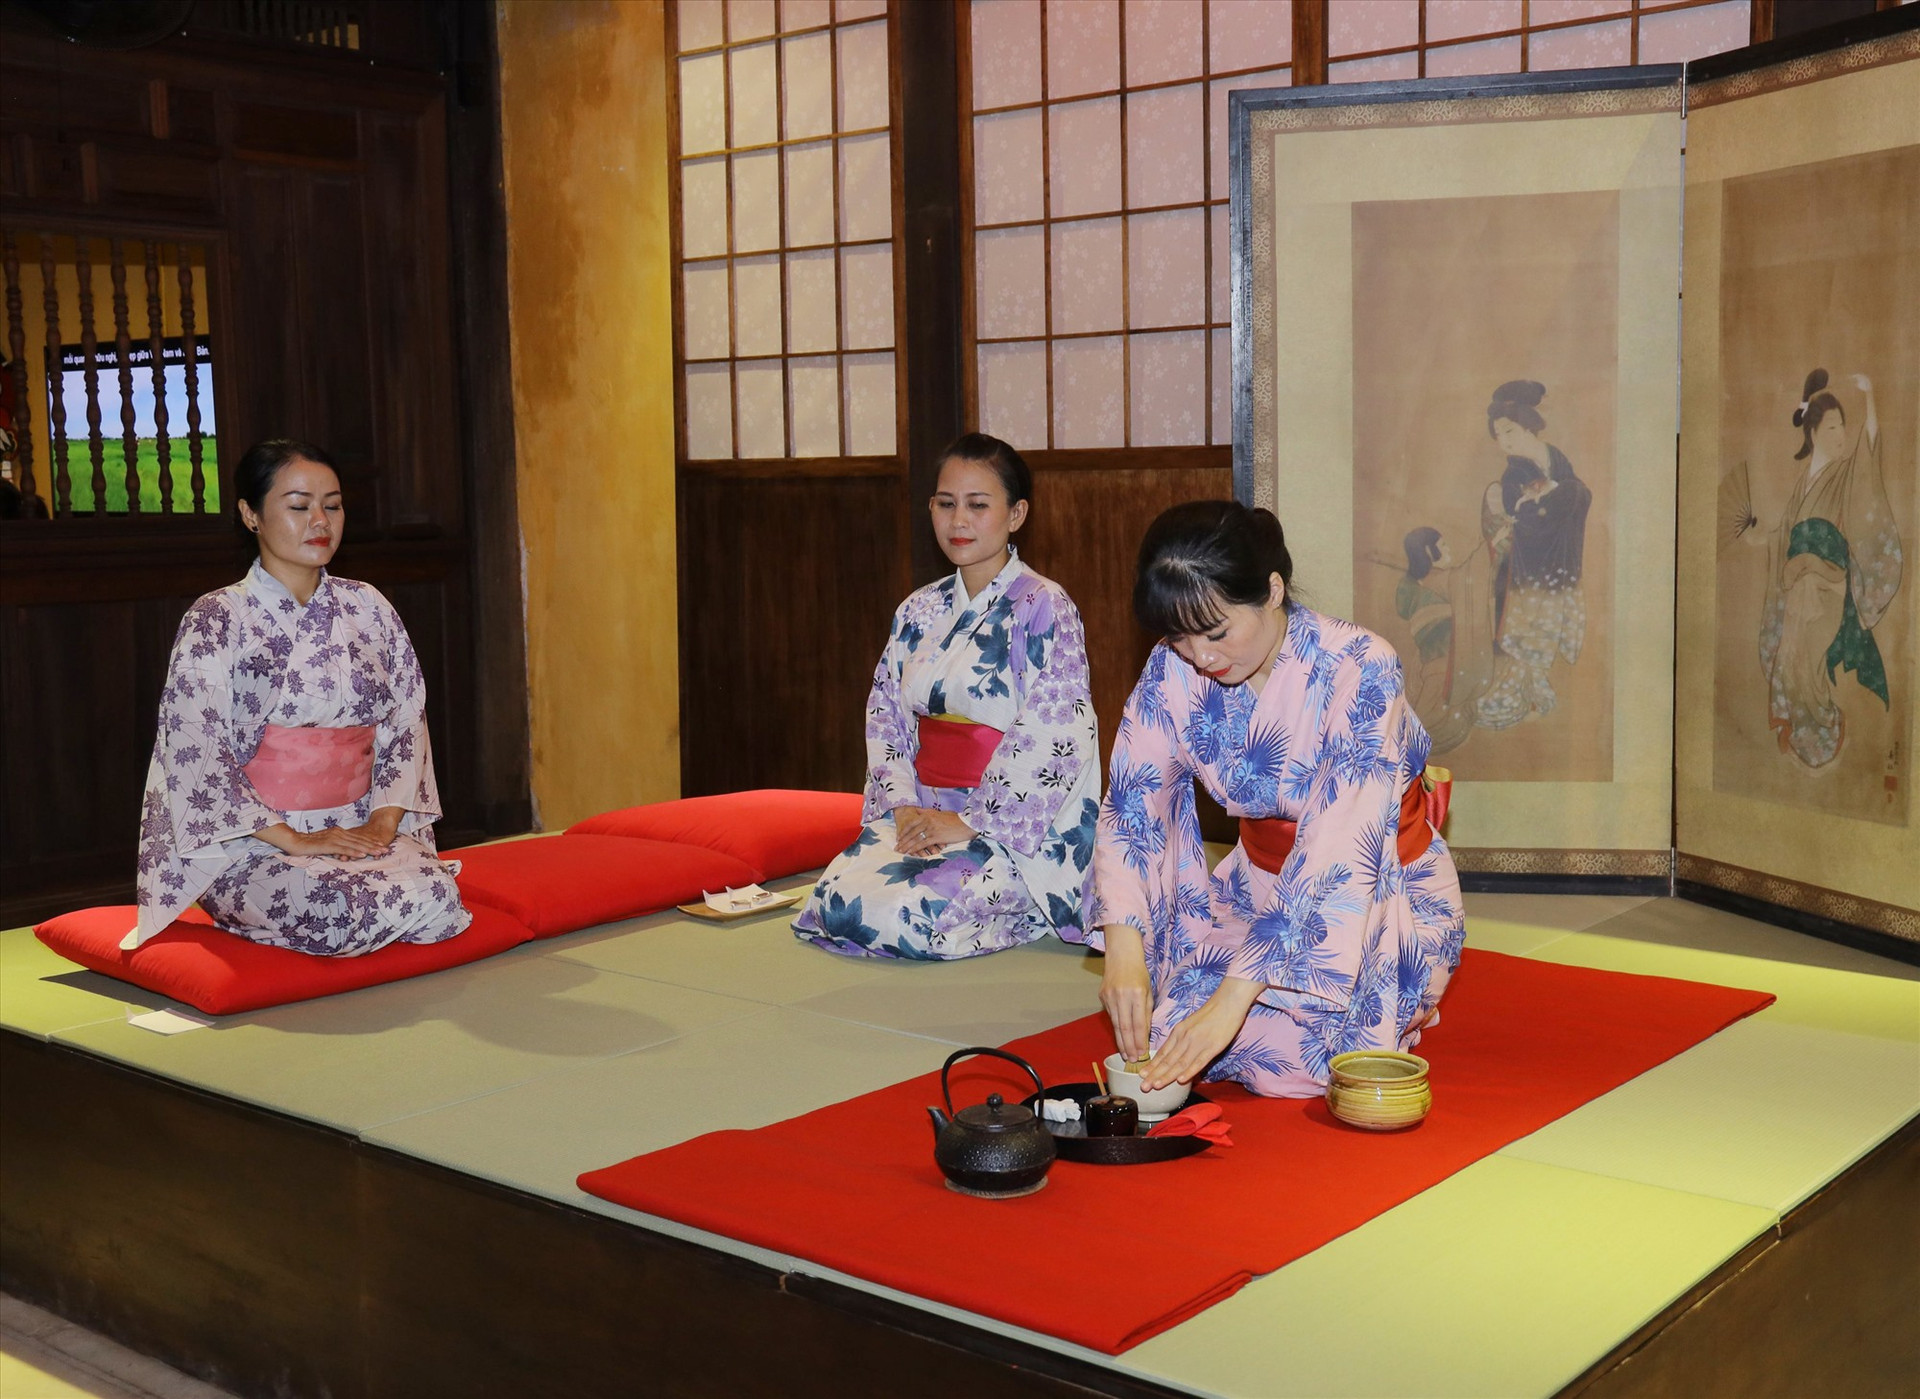 Trình diễn nghi thức trà đạo tại sự kiện giao lưu văn hóa Hội An - Nhật Bản lần thứ 18. Ảnh: LÊ TRỌNG KHANG